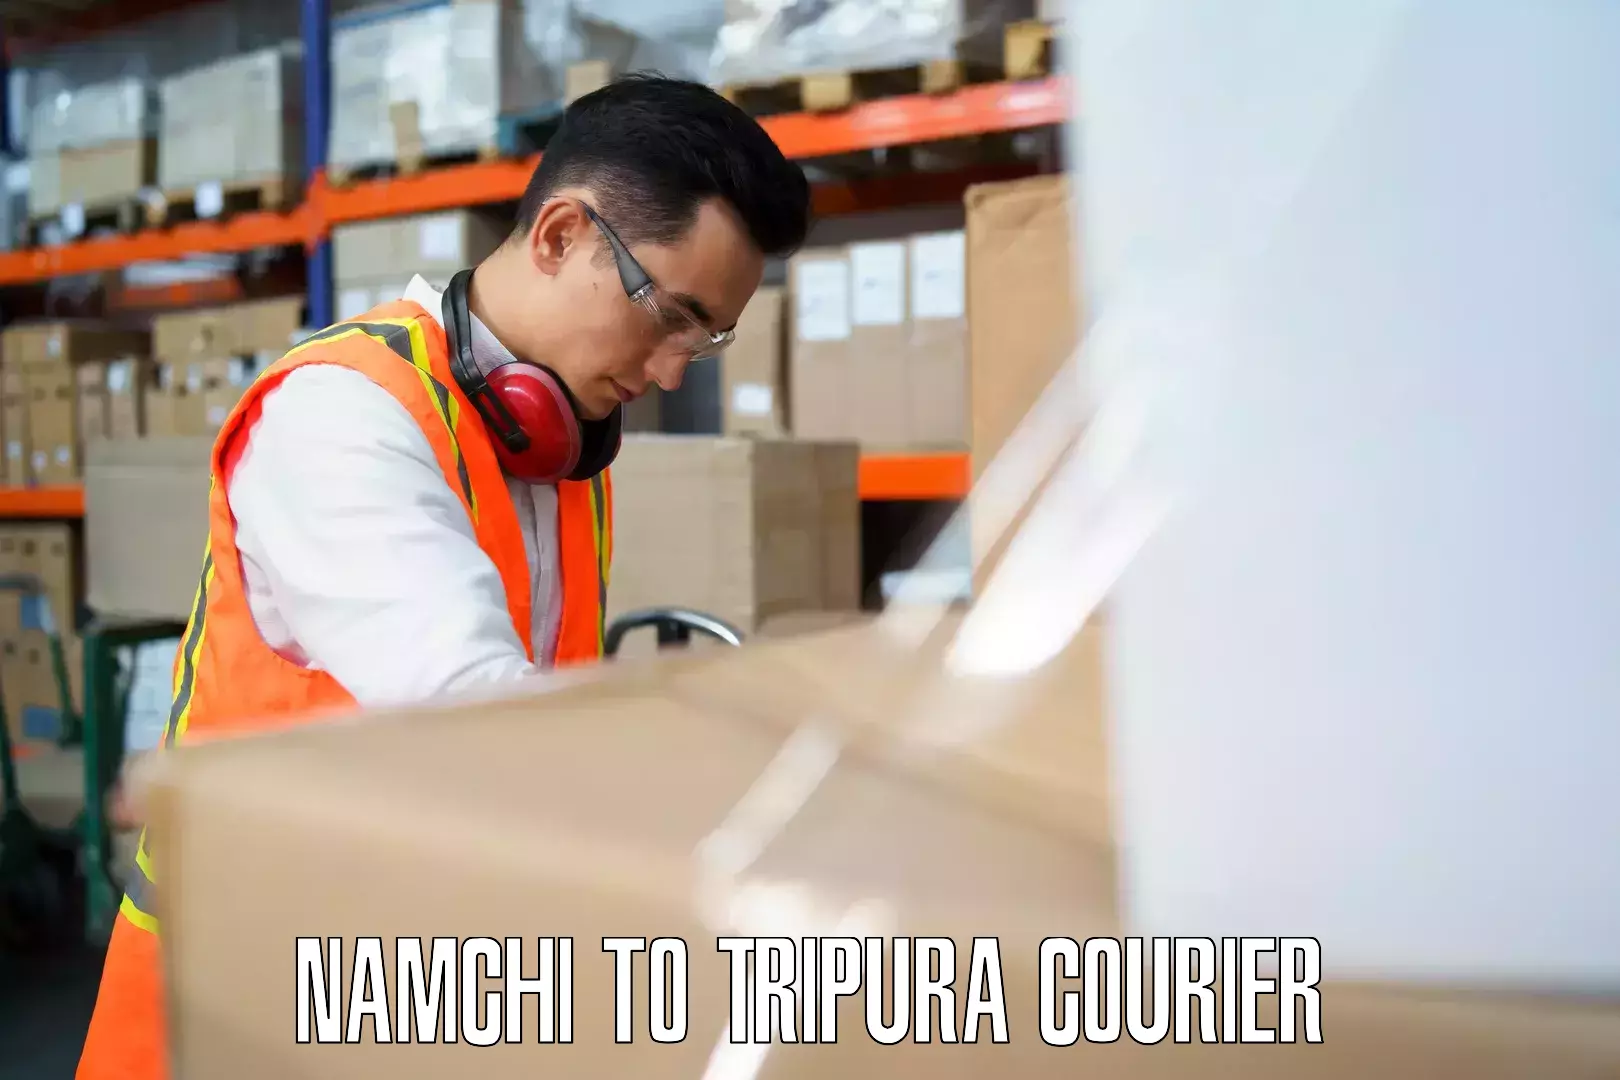 Luggage delivery network Namchi to IIIT Agartala